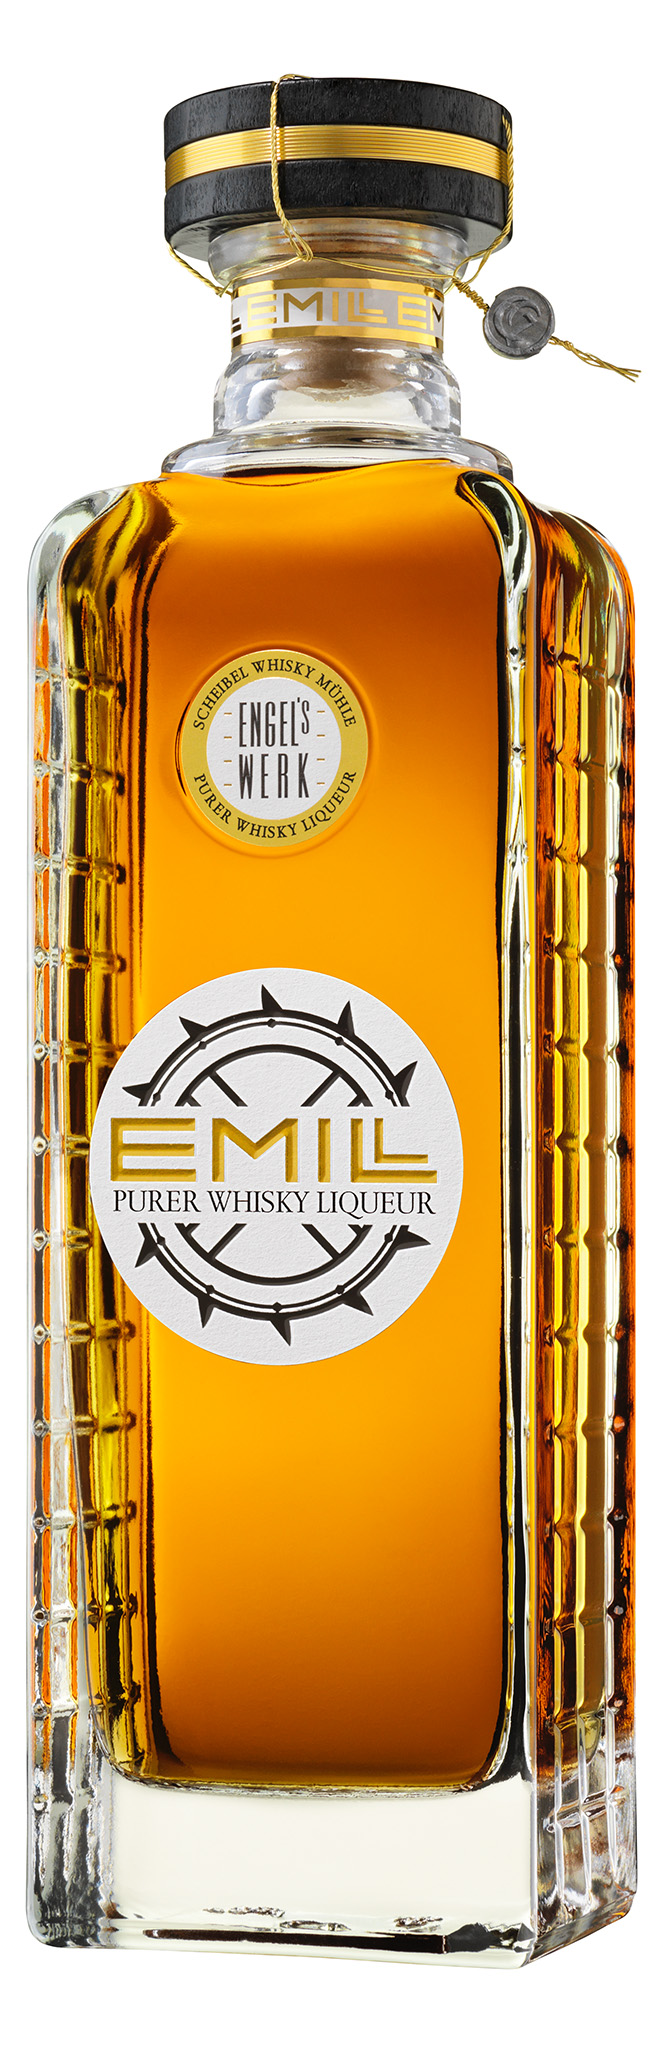 EMILL Engelswerk Whisky Liqueur 40% Vol. mit Geschenkbox 0,7 l